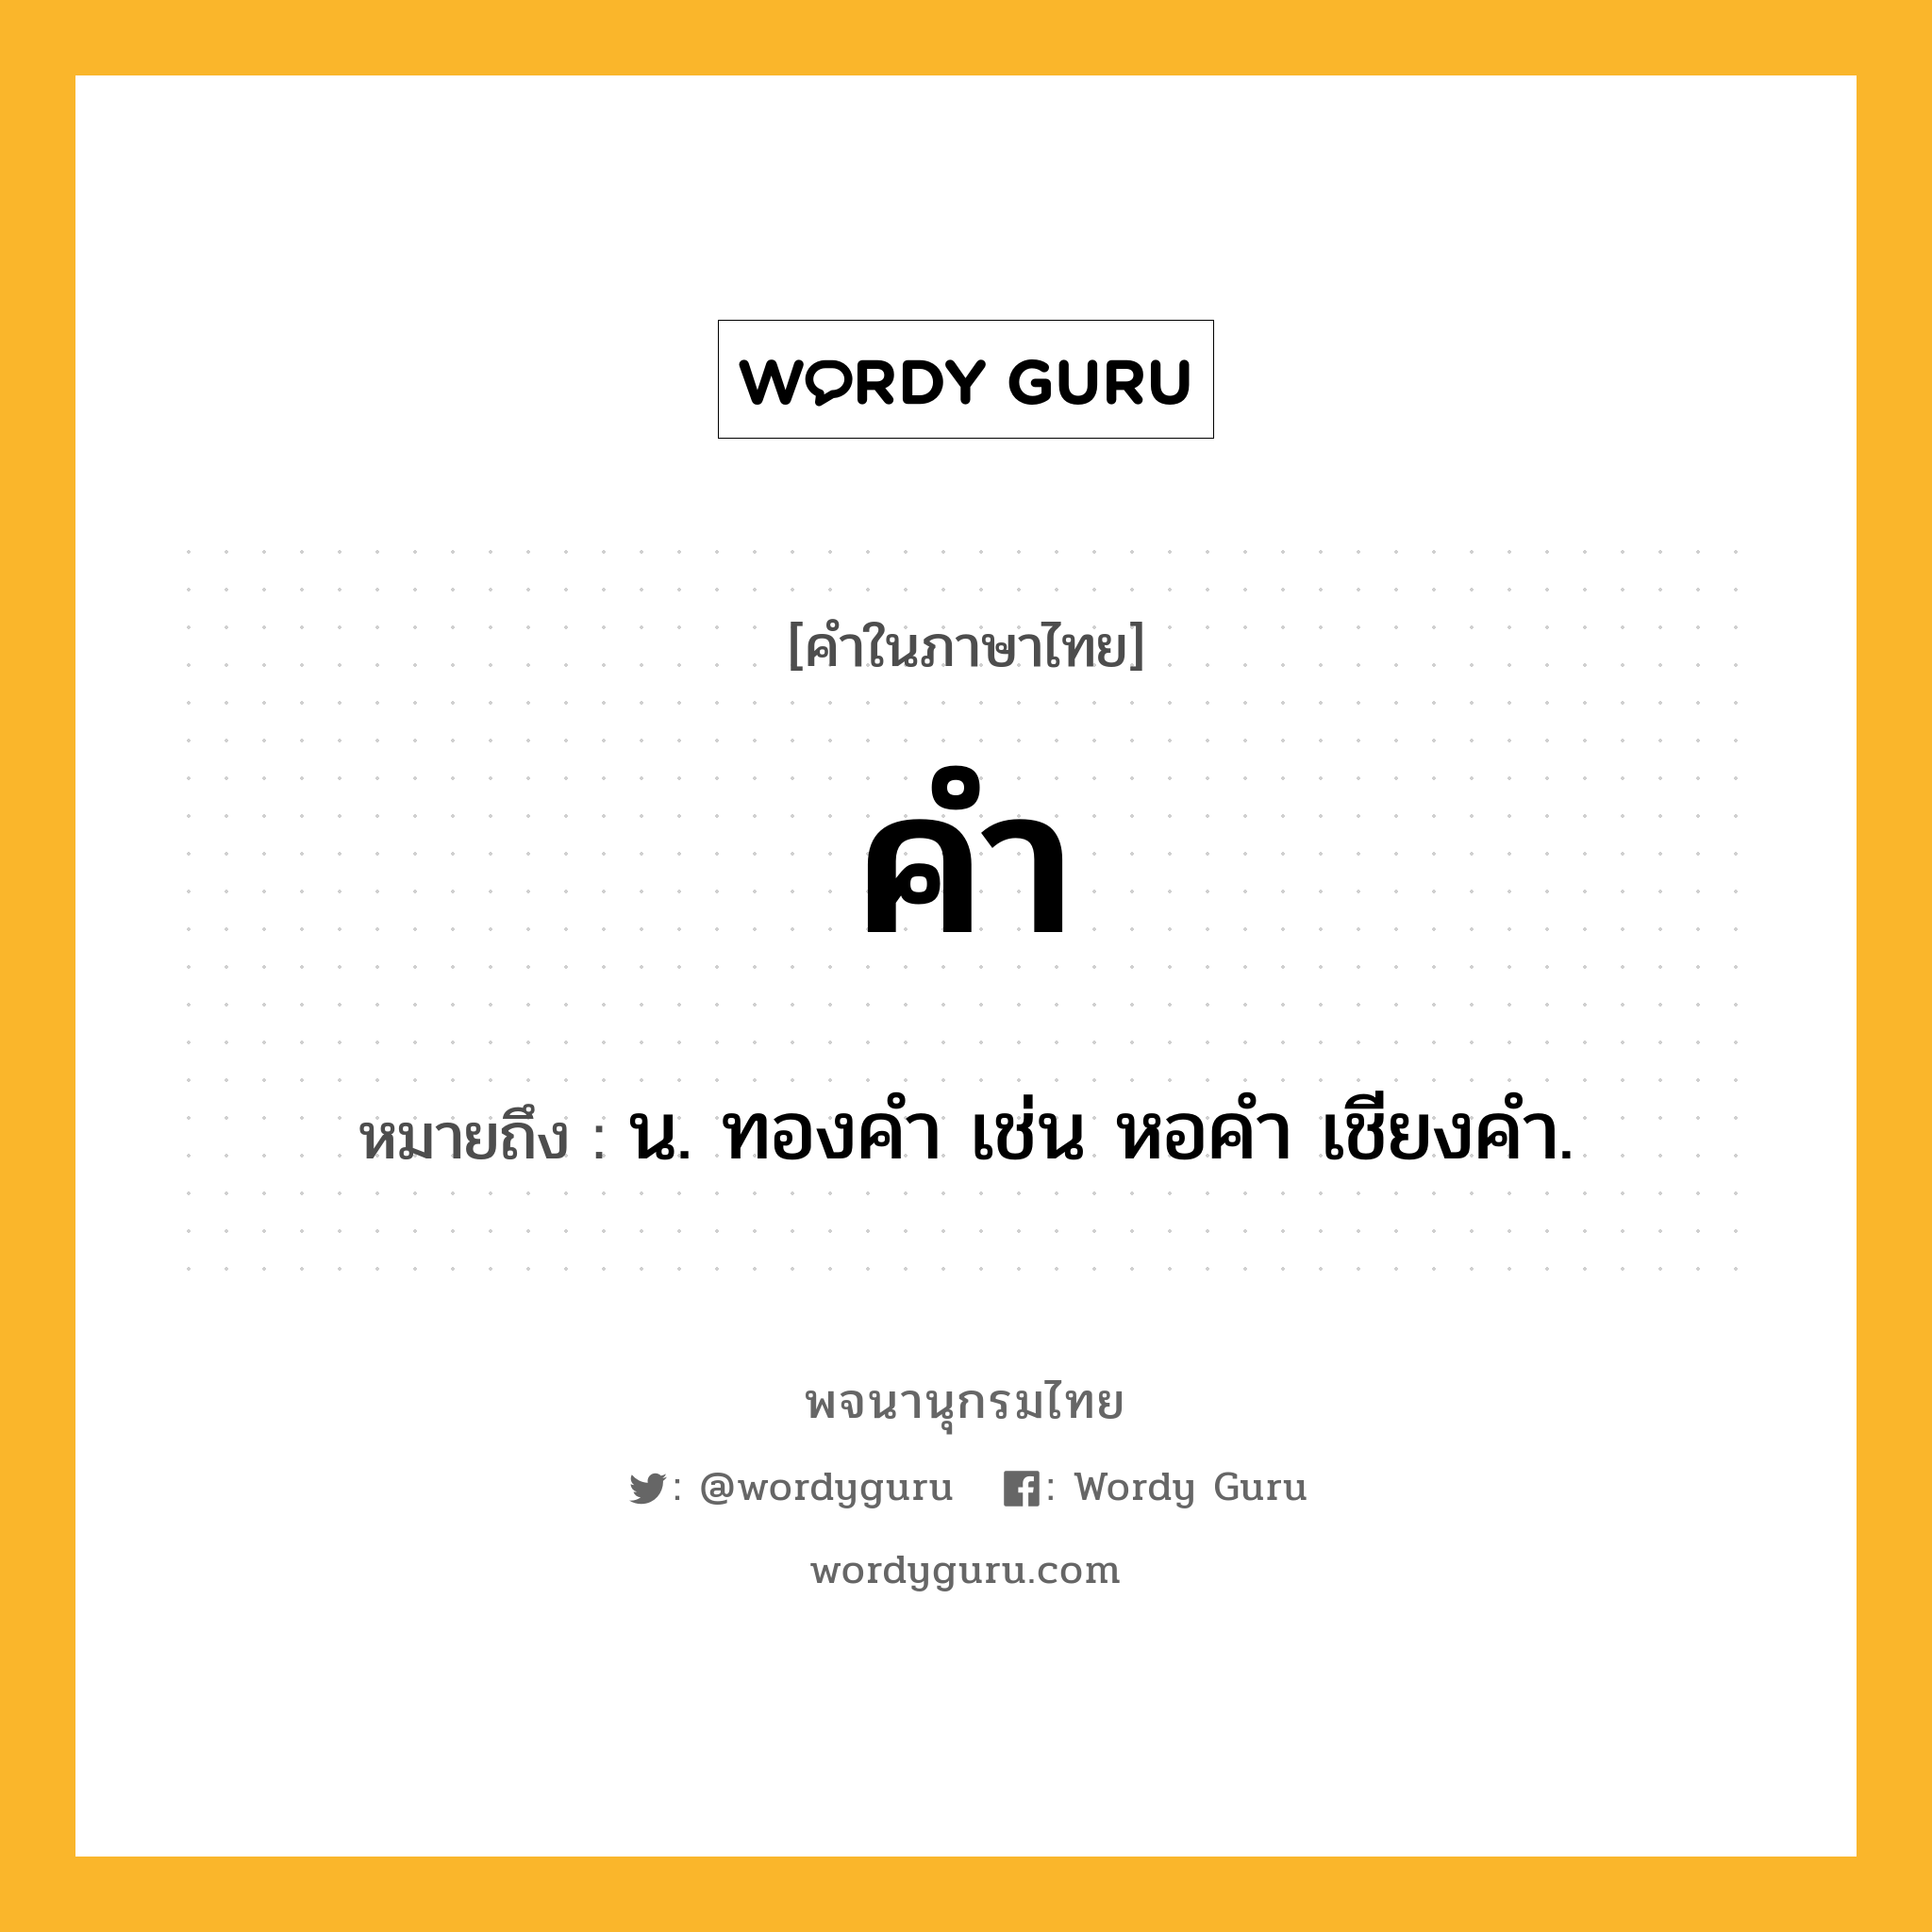 คำ ความหมาย หมายถึงอะไร?, คำในภาษาไทย คำ หมายถึง น. ทองคํา เช่น หอคำ เชียงคำ.